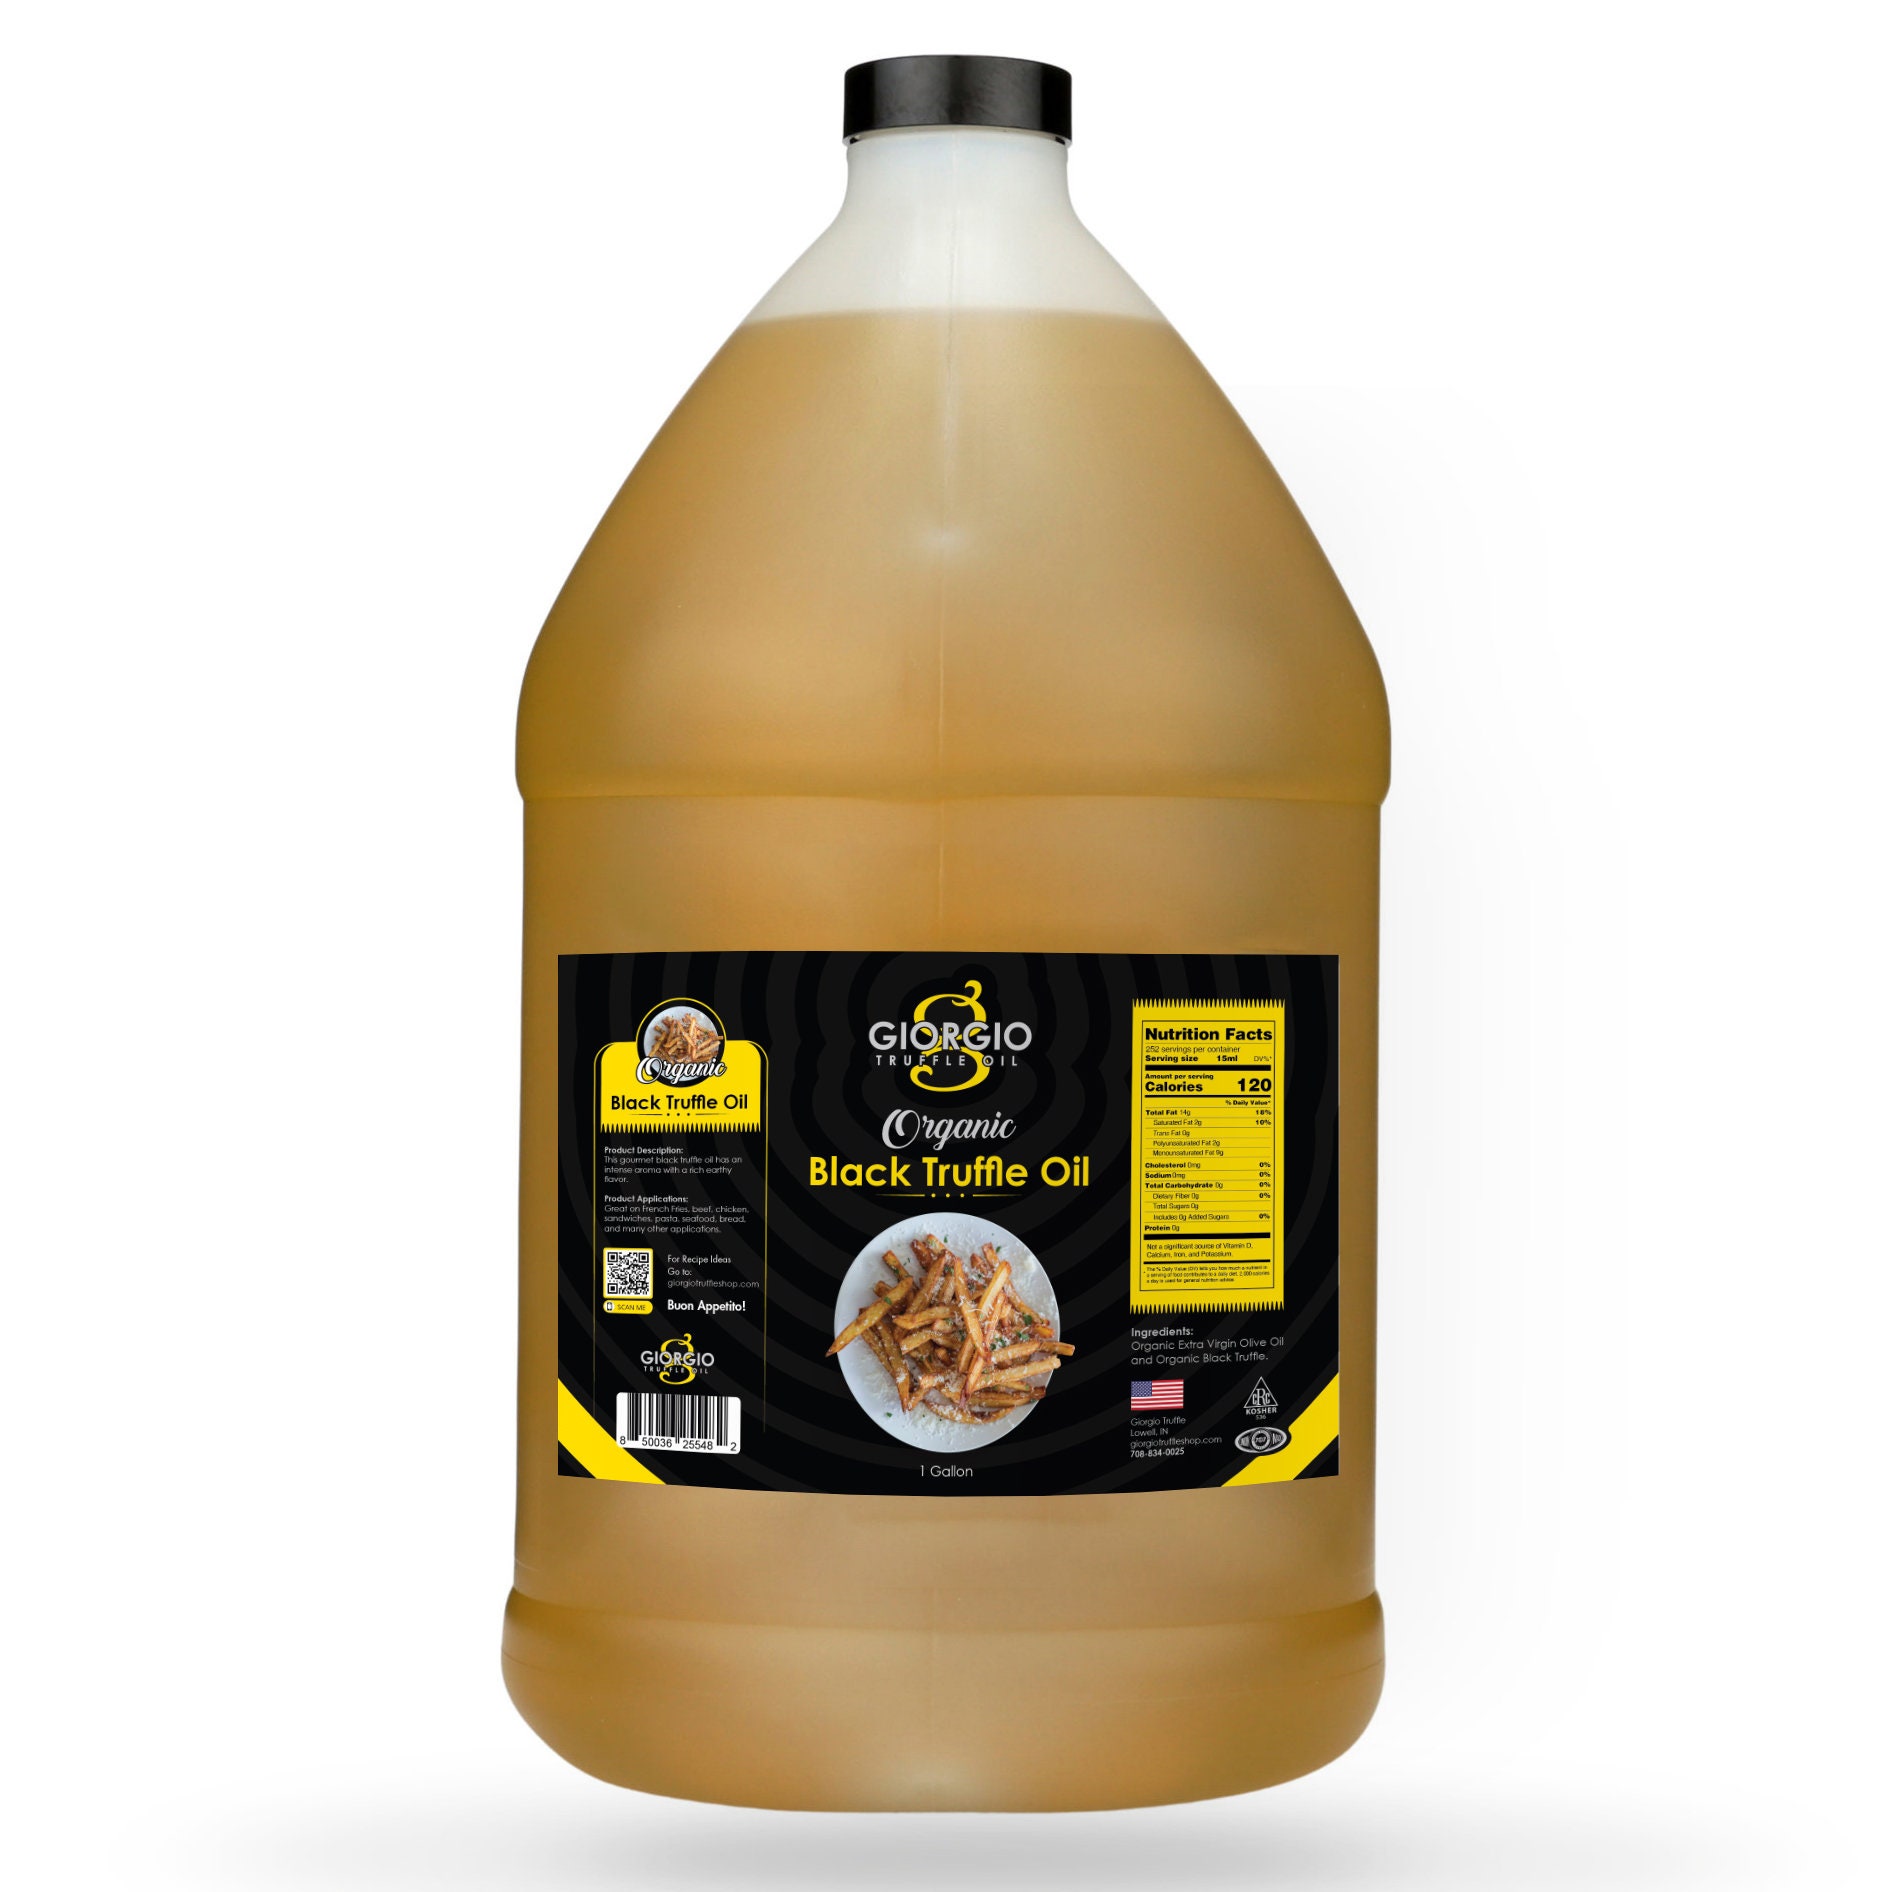 Rosemary / Basil Infused Extra Virgin Olive Oil Bulk 1 Gallon / 3.8 Liter